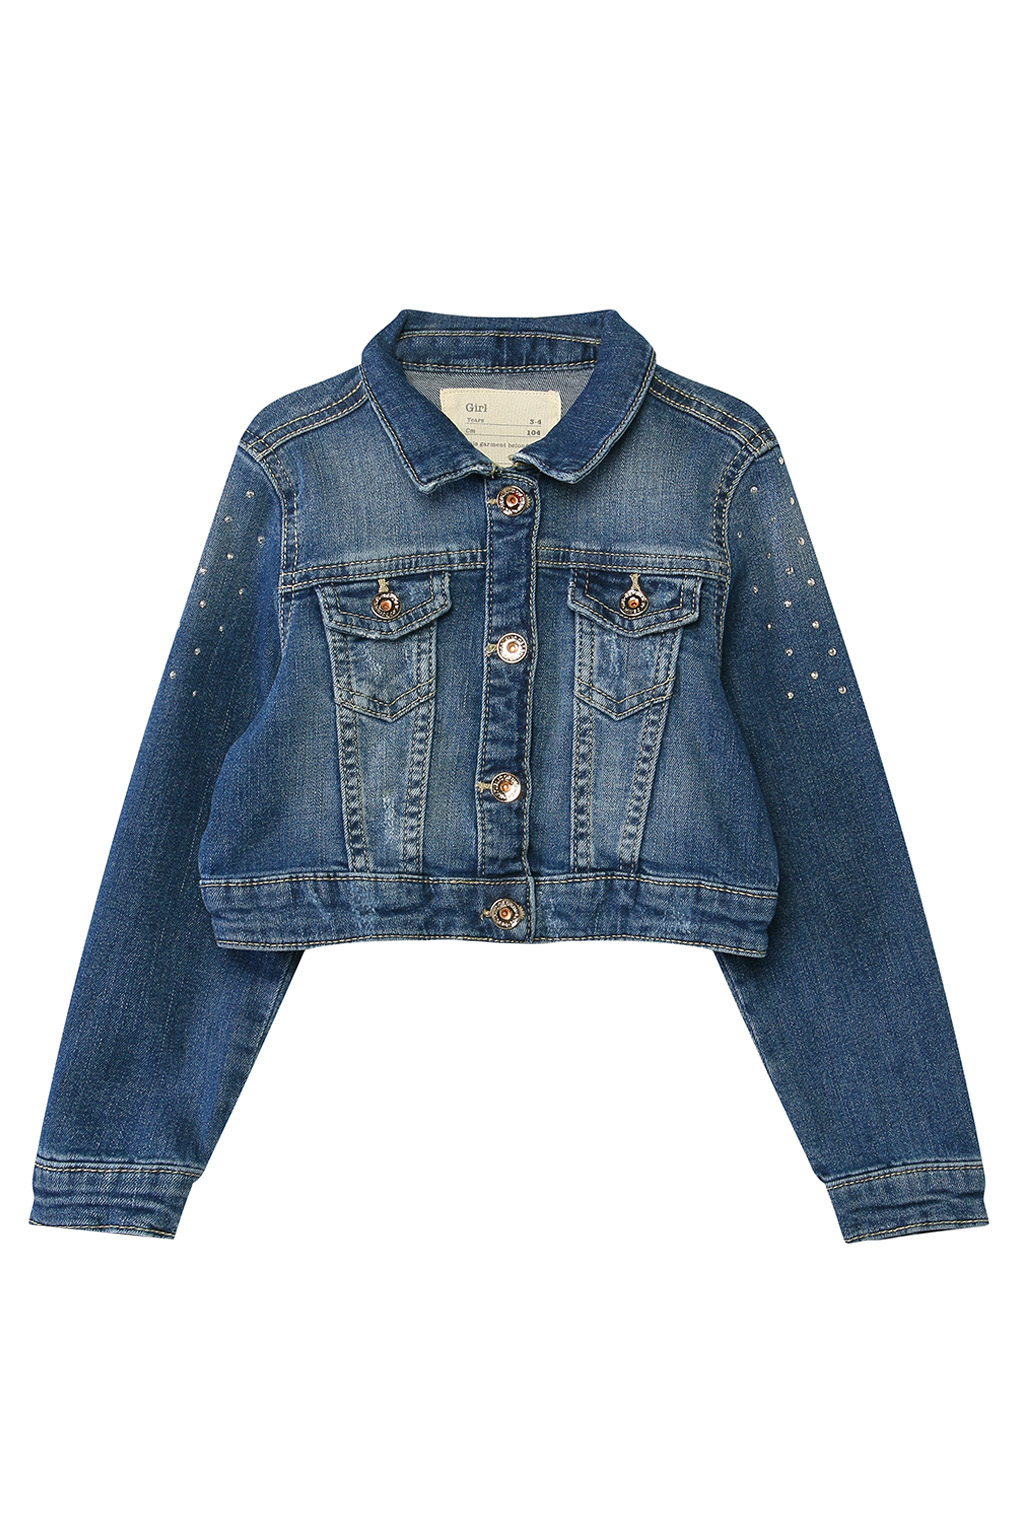 фото Куртка джинсовая детская ovs 1114916 цв.синий р.104